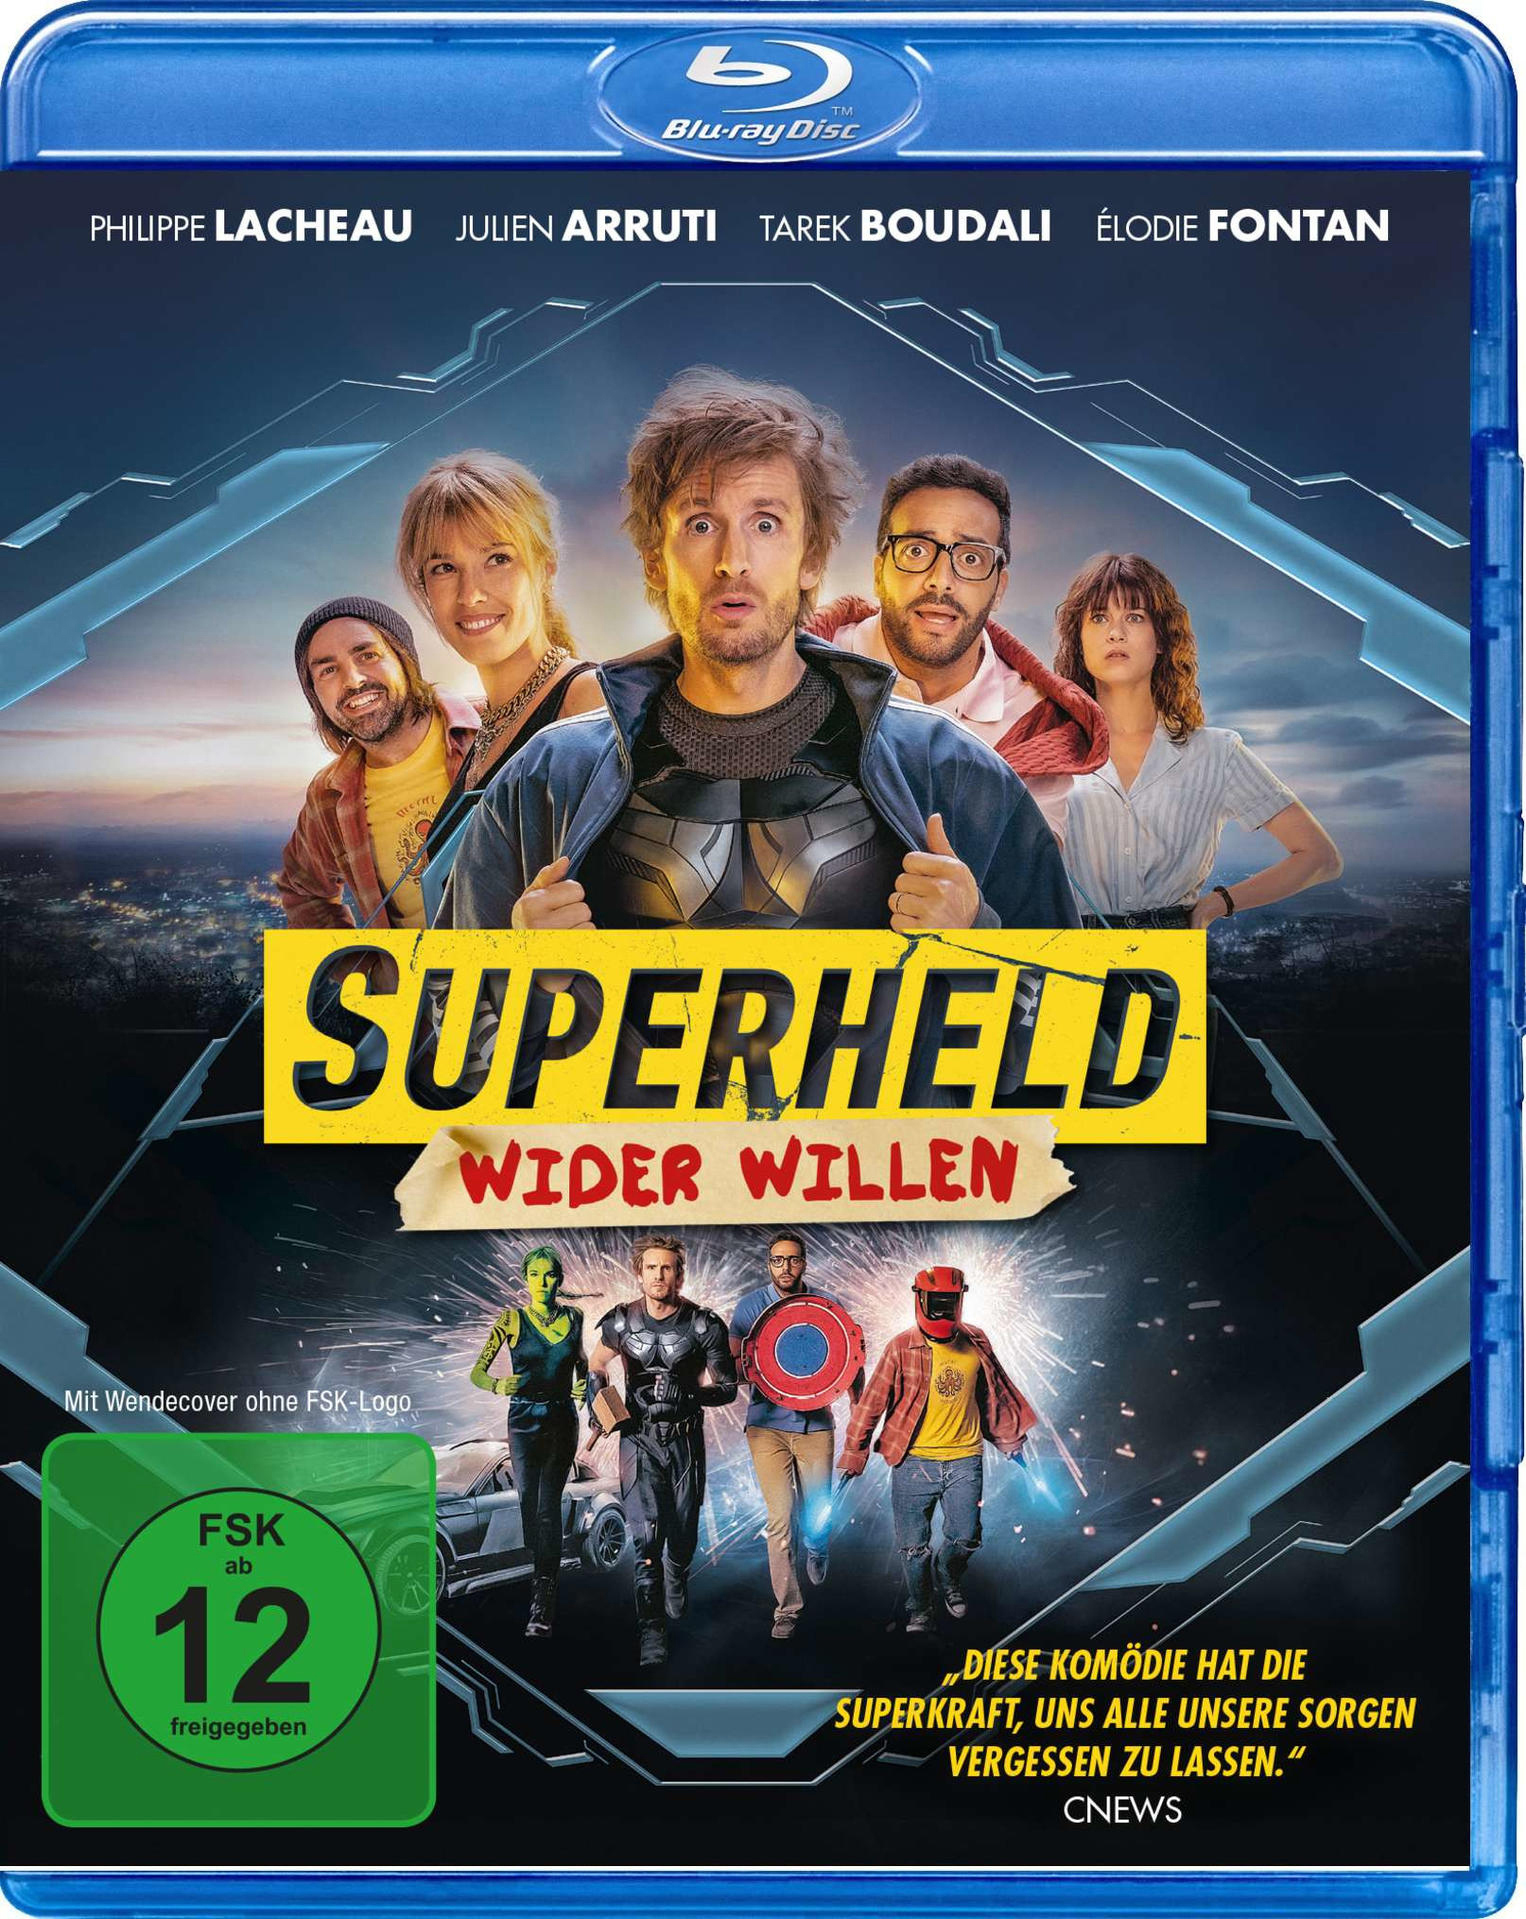 Wider Superheld Blu-ray Willen